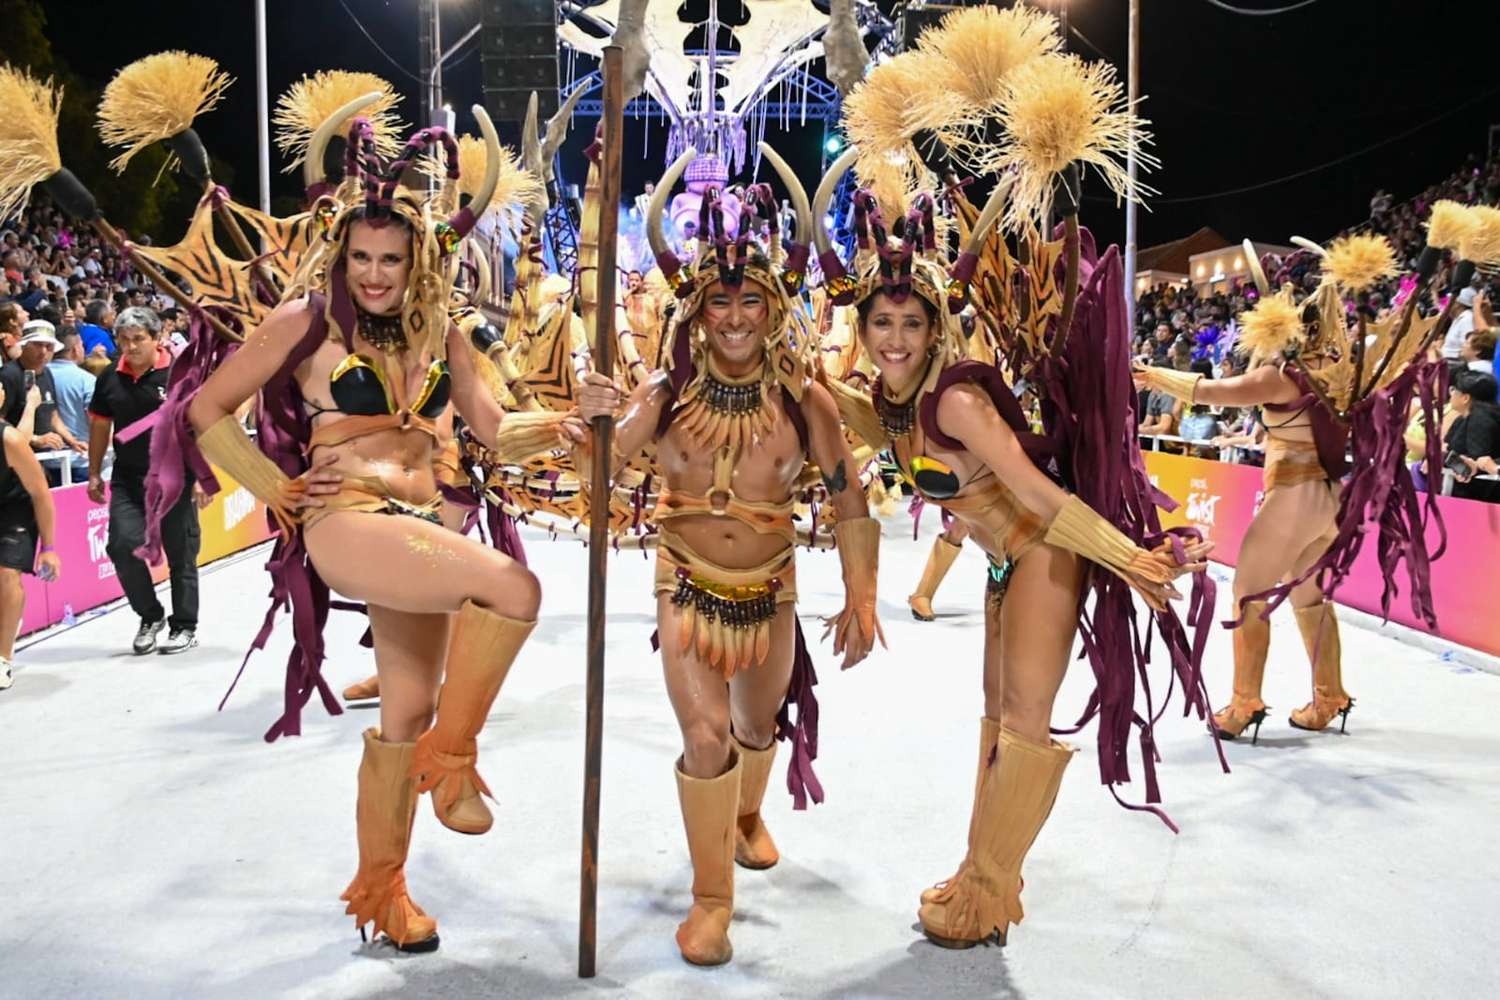 Kamarr sigue creciendo y apostando a ser la primera comparsa sin plumas del Carnaval del País